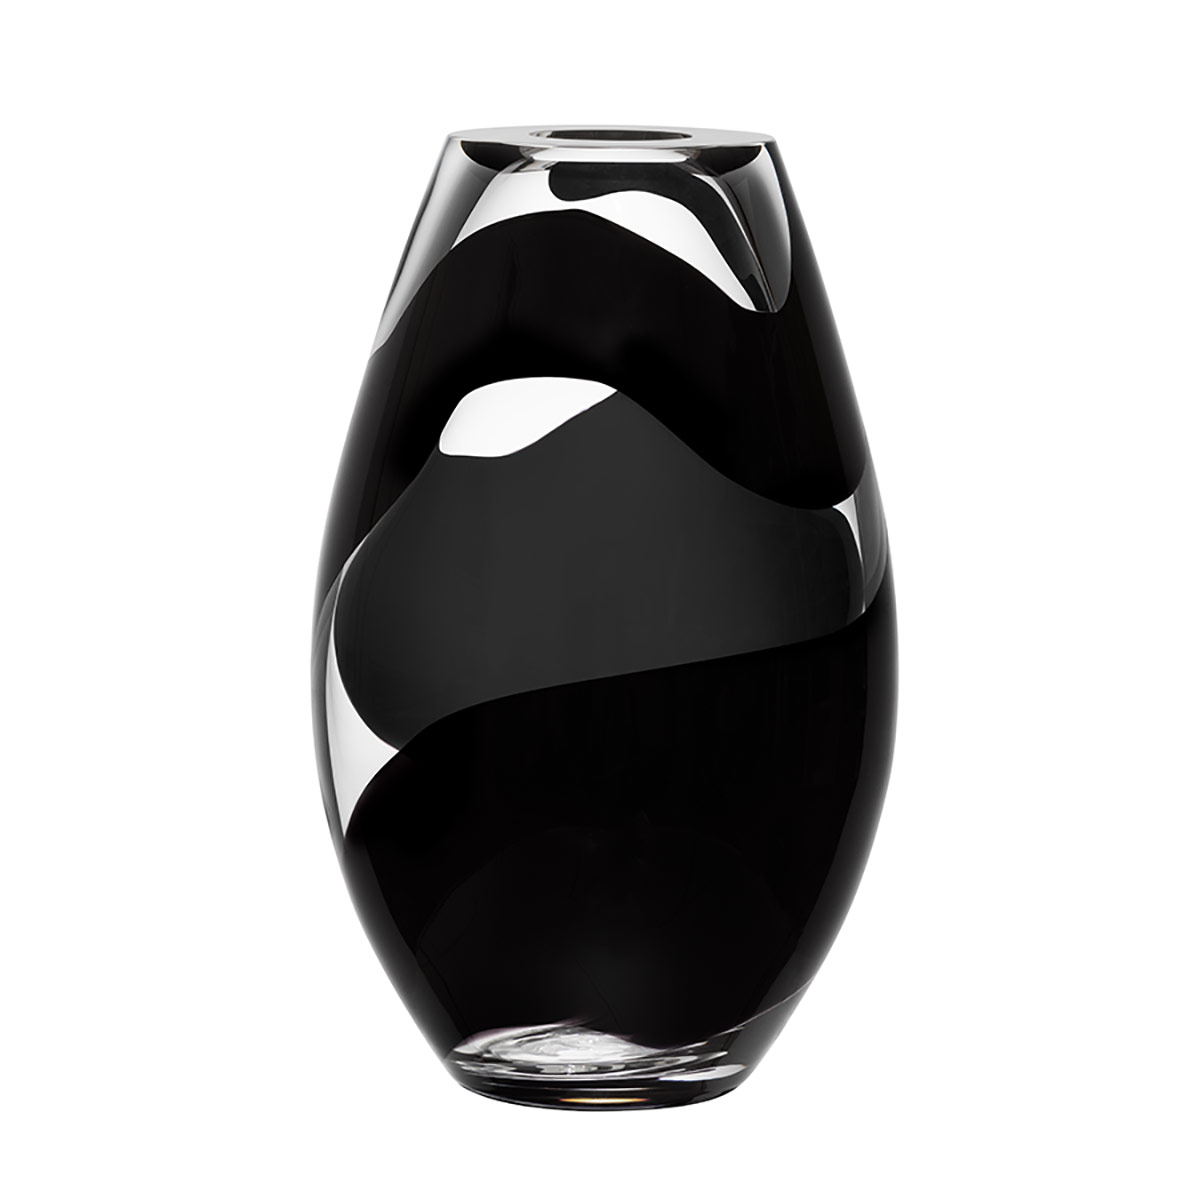 Kosta Boda Non Stop Vase in Black